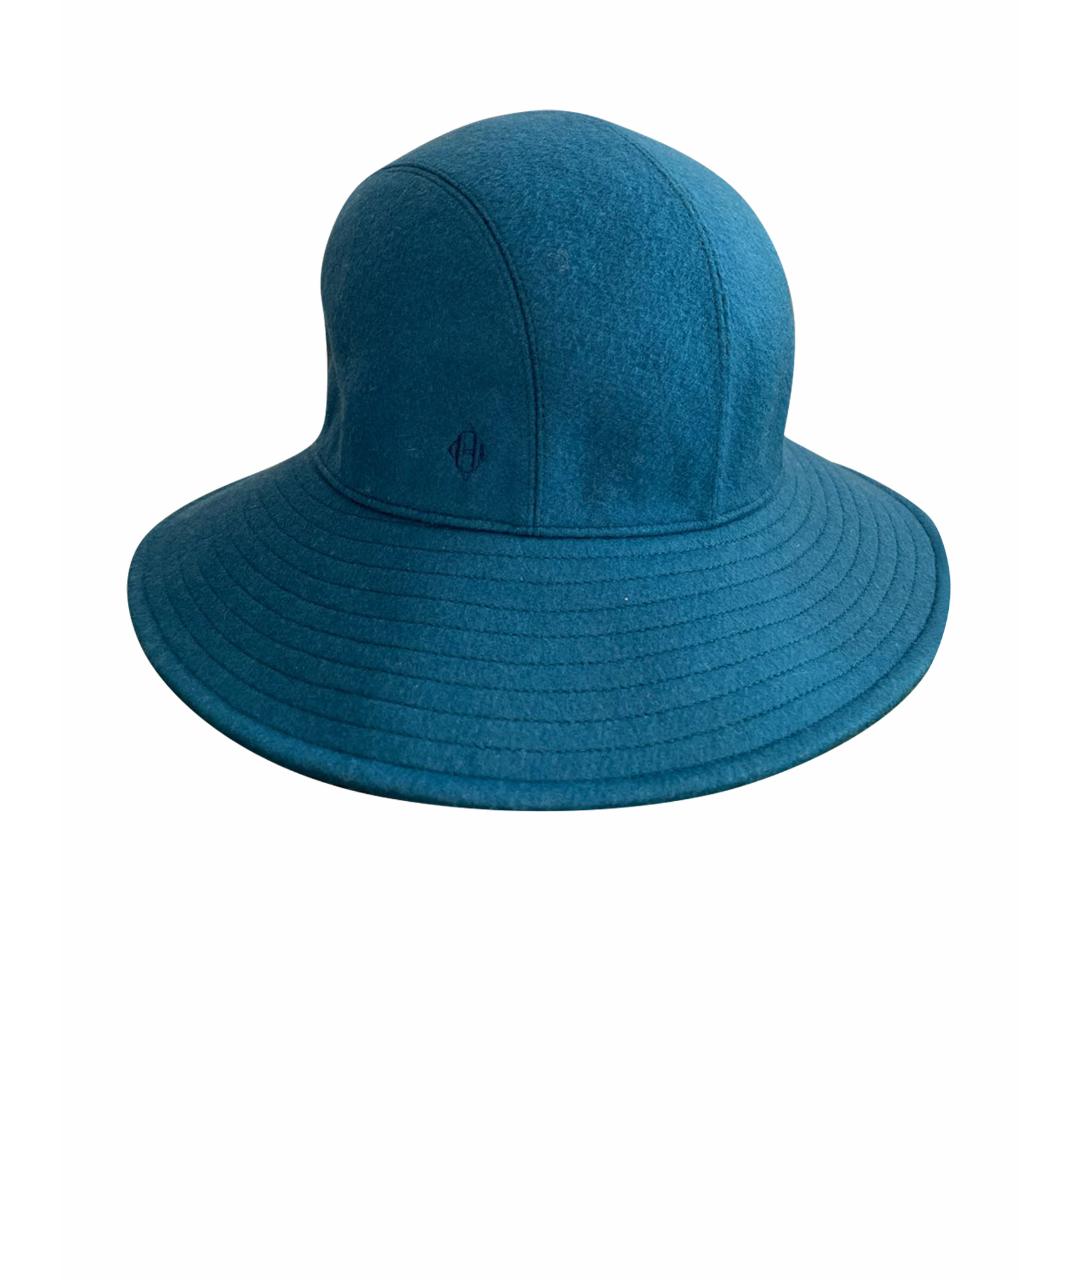 HERMES Синяя кашемировая шляпа, фото 1